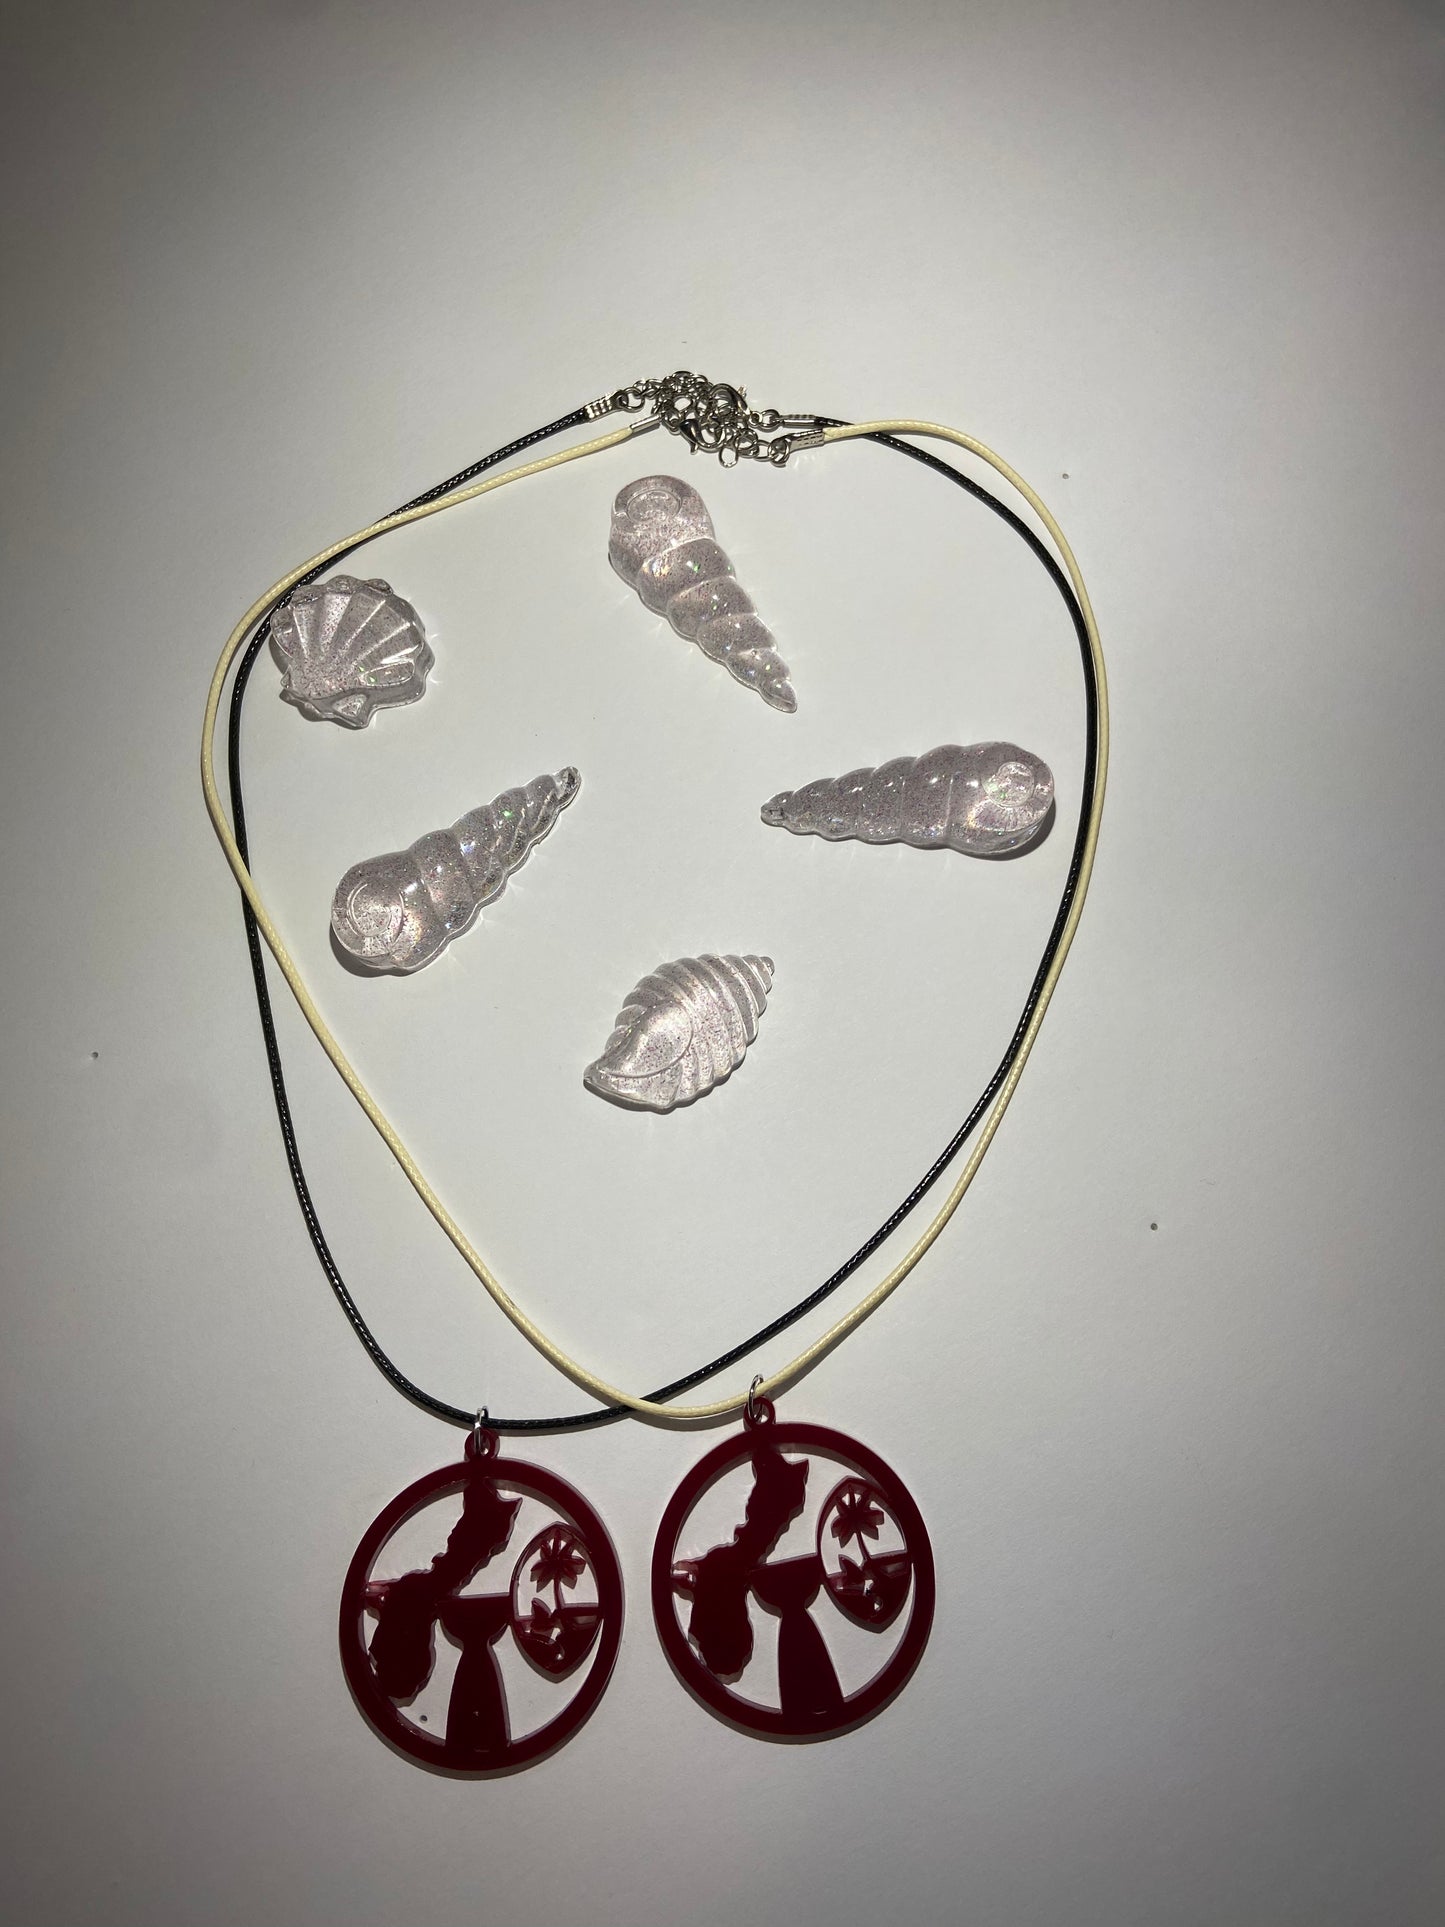 Guam Seal Necklace